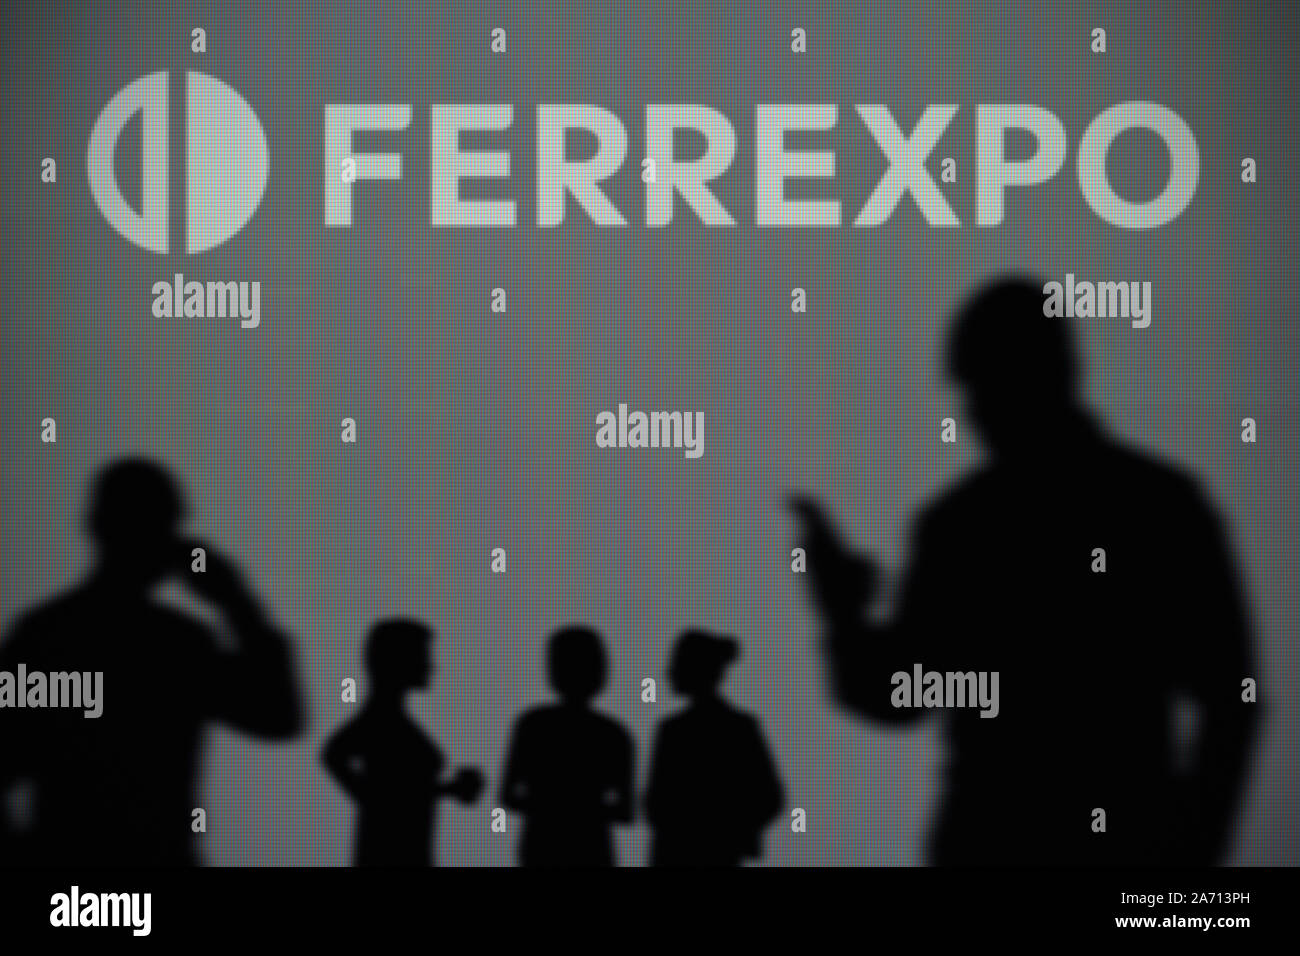 El logotipo de Ferrexpo es visto en una pantalla LED en el fondo mientras una silueta persona utiliza un smartphone (uso Editorial solamente) Foto de stock